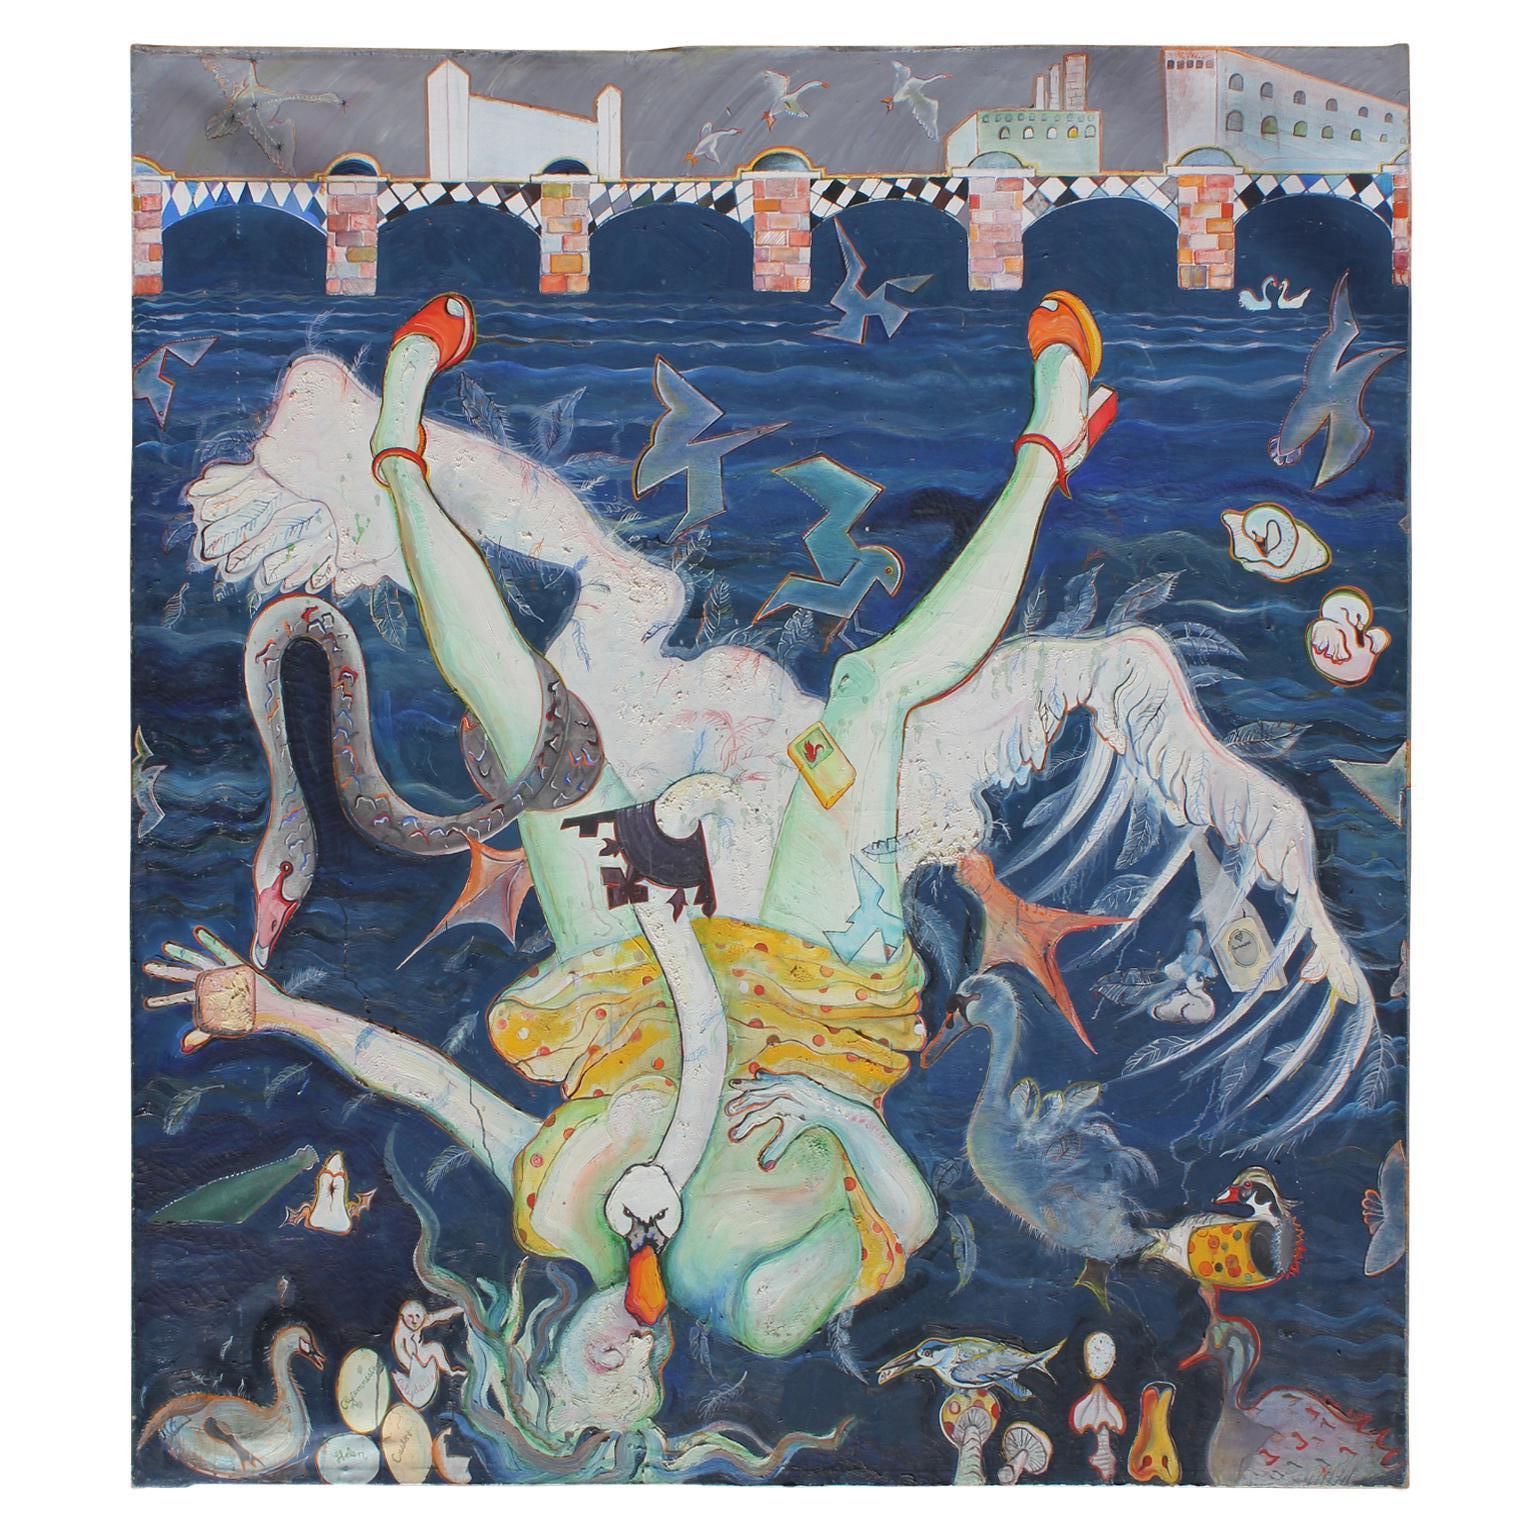 Linda Sutton Figurative Painting - "Leda and the Swan by Wandsworth Bridge" Large Greek Mythology Themed Surrealist